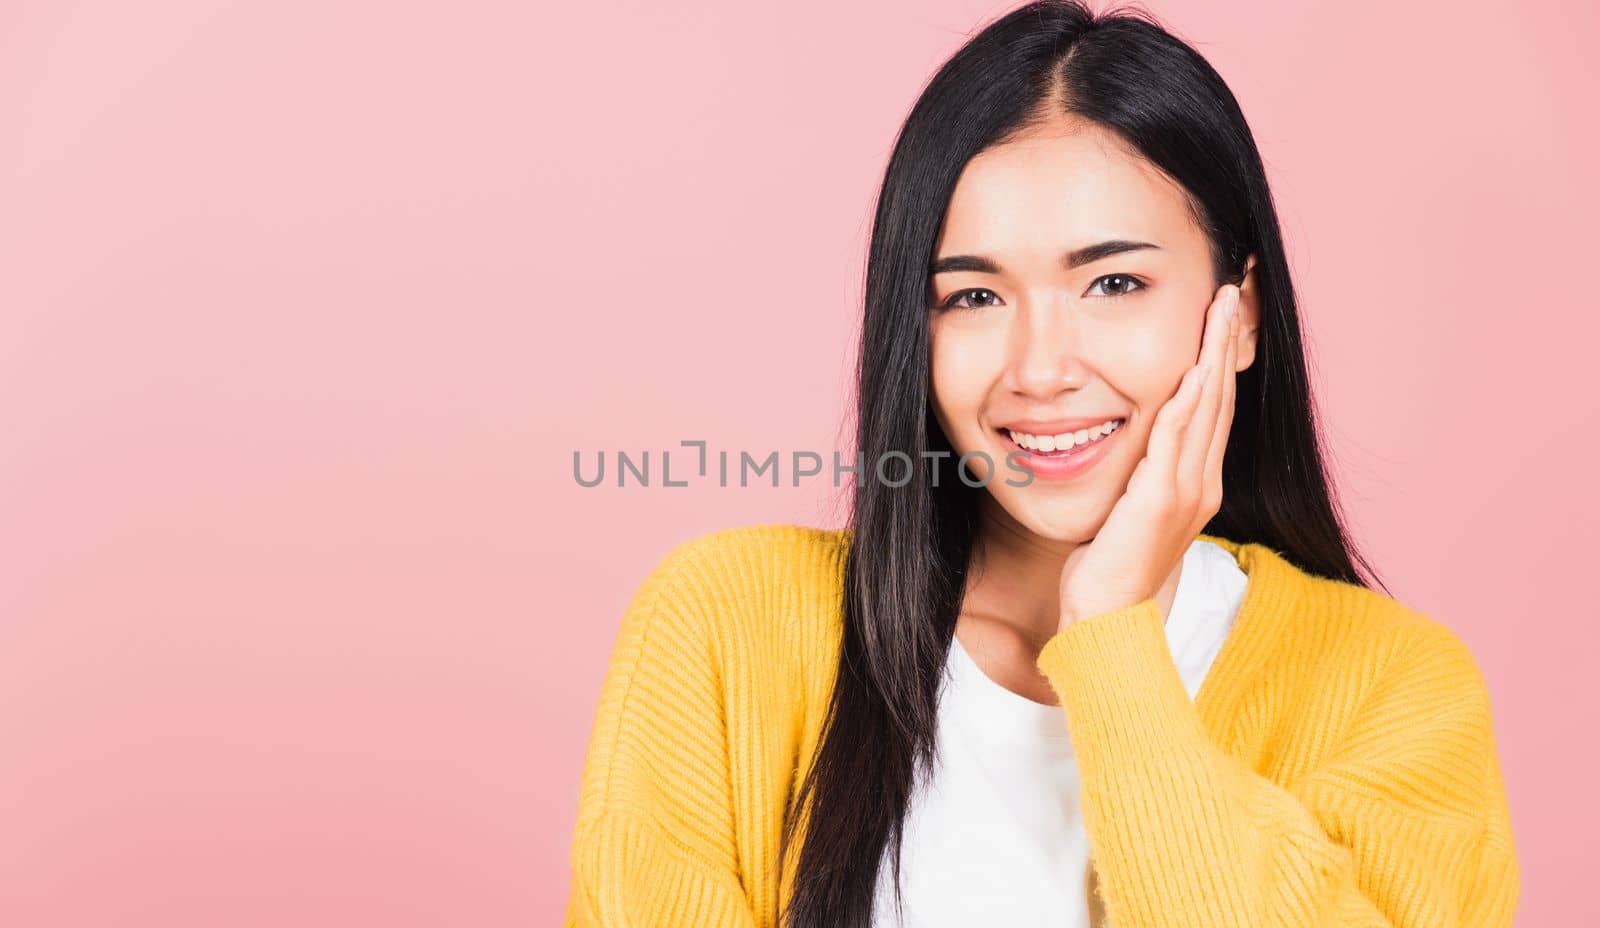 woman teen smiling white teeth surprised excited celebrating gesturing by Sorapop